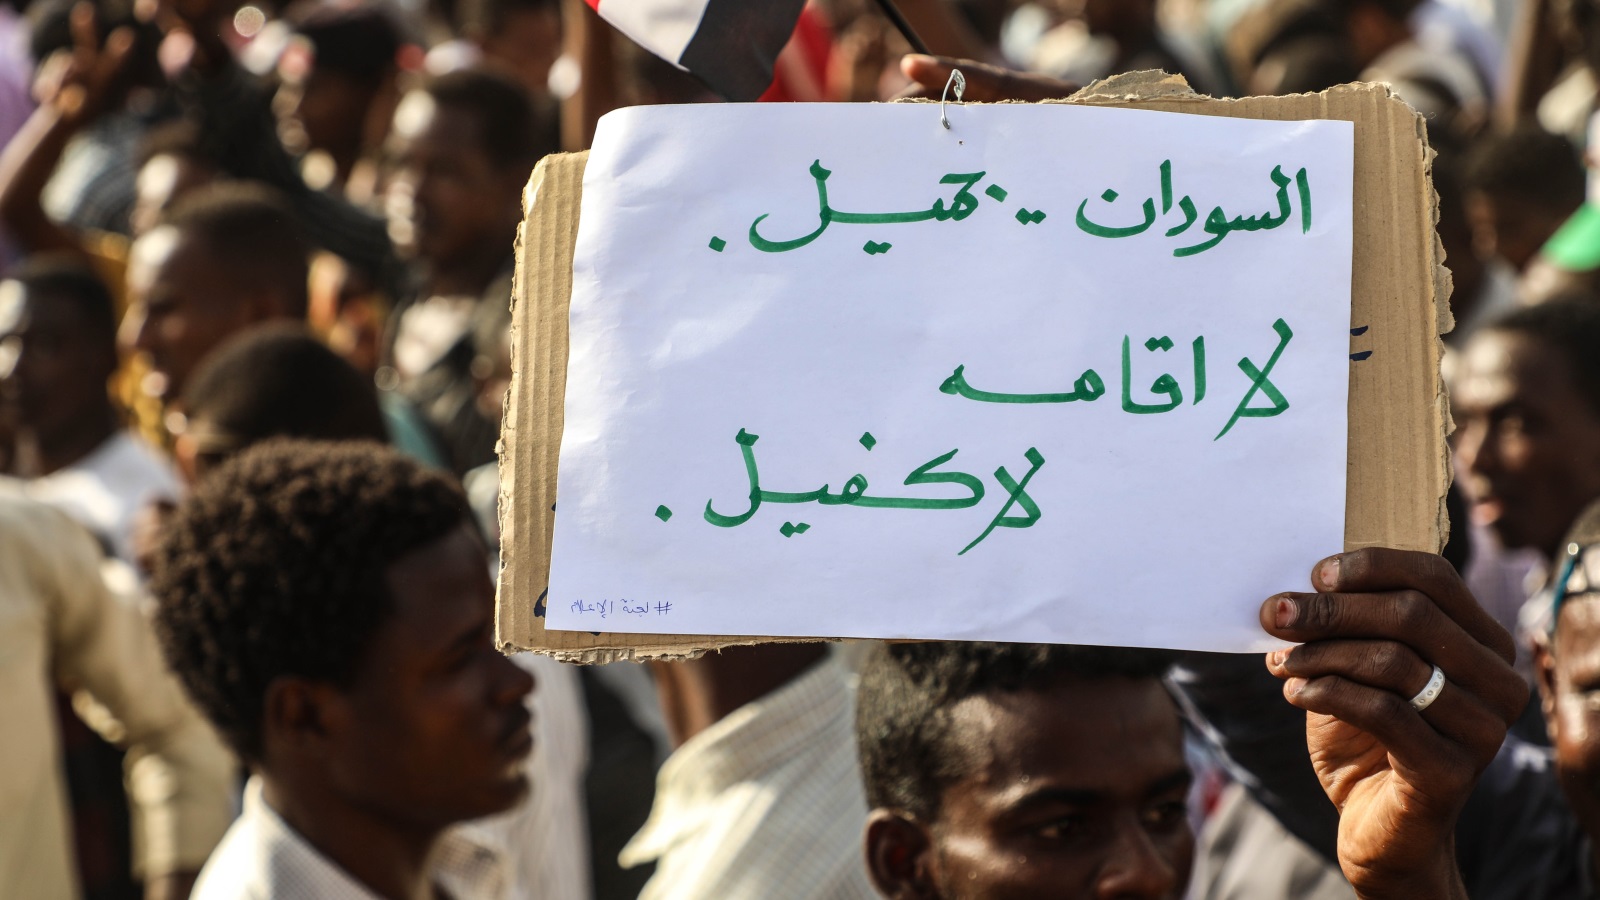 الصحيفة لم تتجاهل المعارضة الشديدة التي أبداها ثوار السودان للتدخل السعودي الإماراتي (الأناضول)